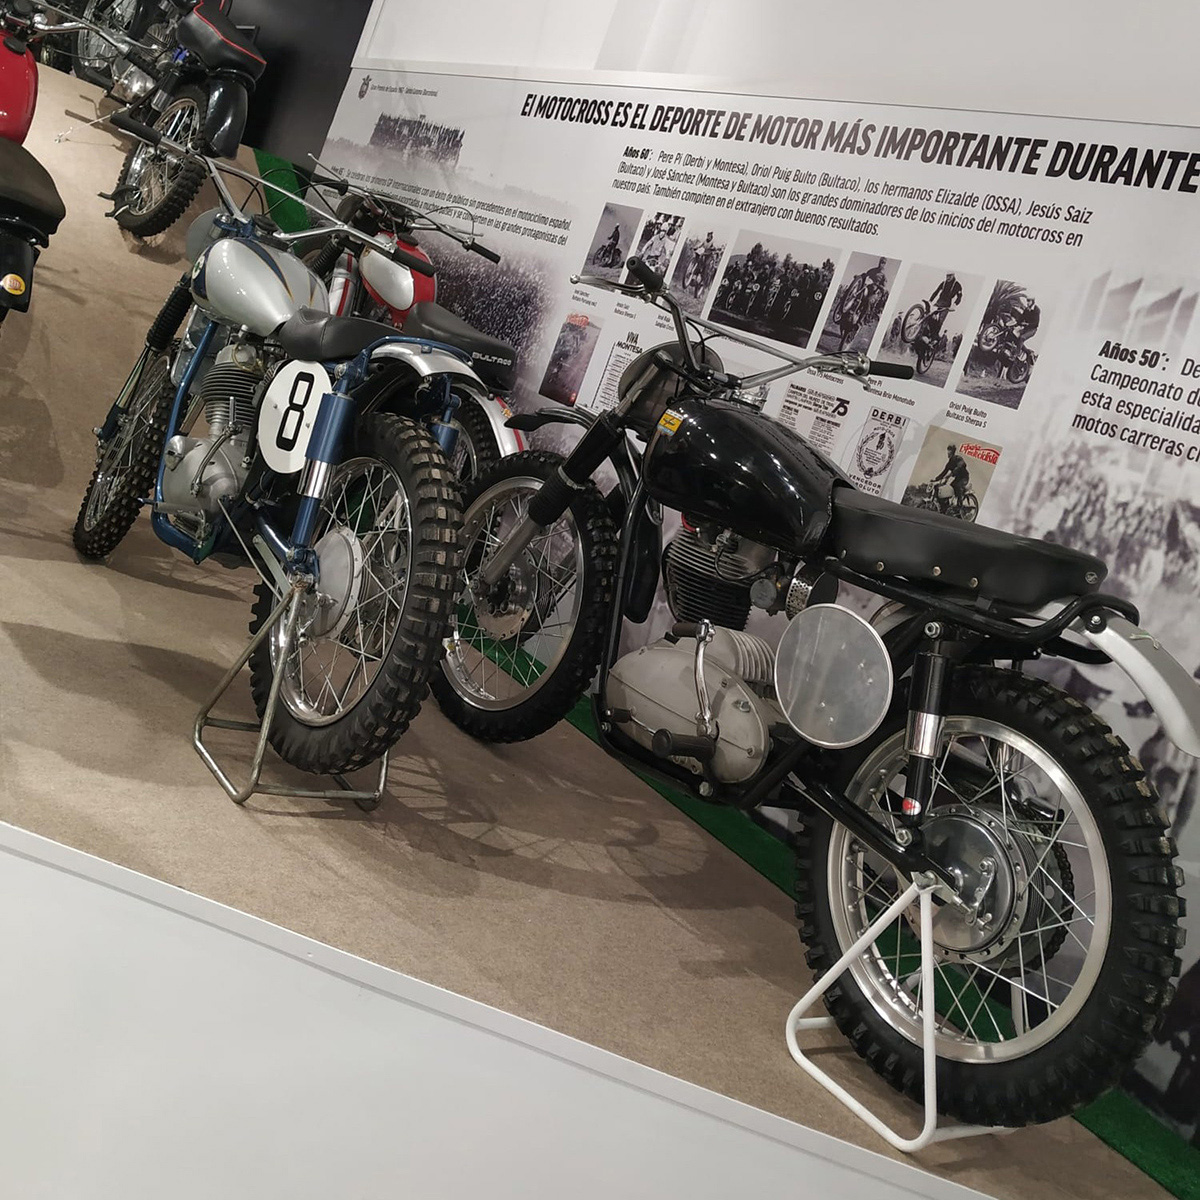 En Motos Made in Spain el motocross tiene mucha importancia